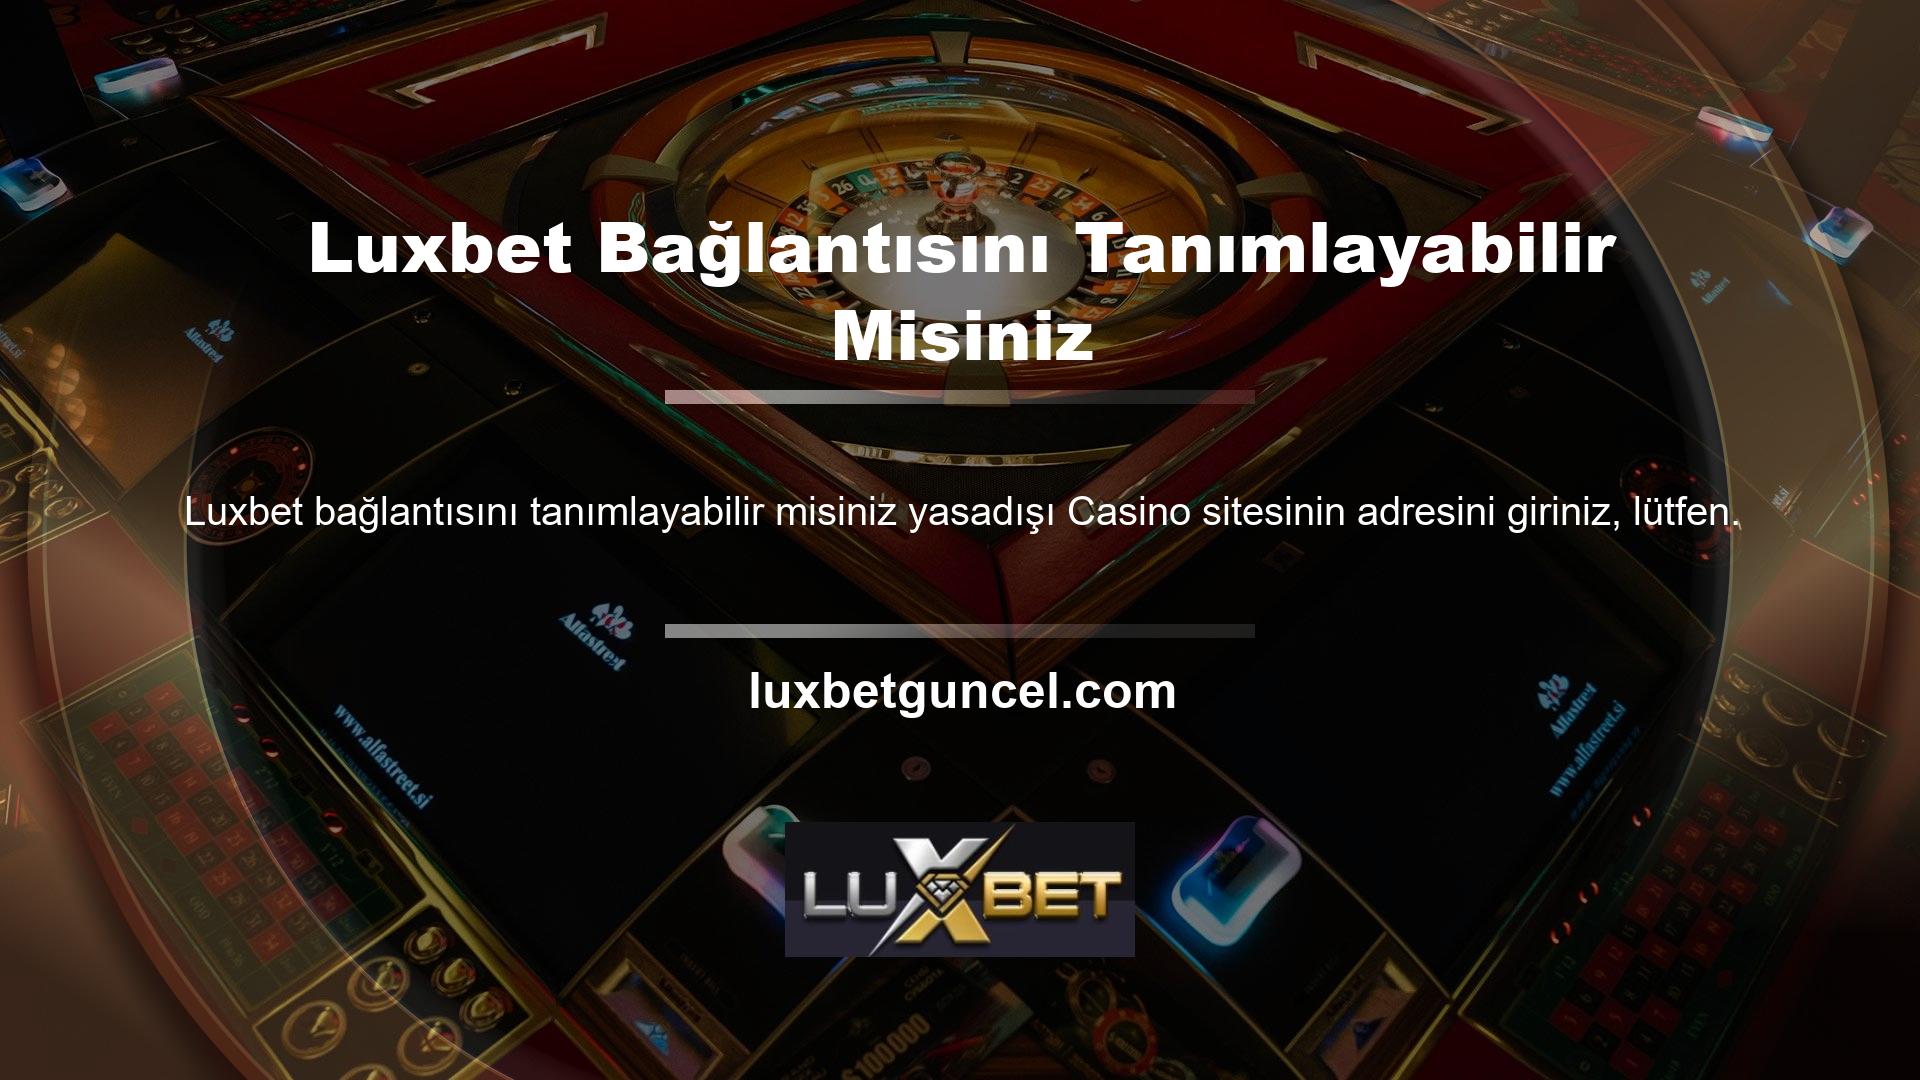 Kayıtlı cep telefonu numaranızı talep ederek Luxbet üye olabilirsiniz